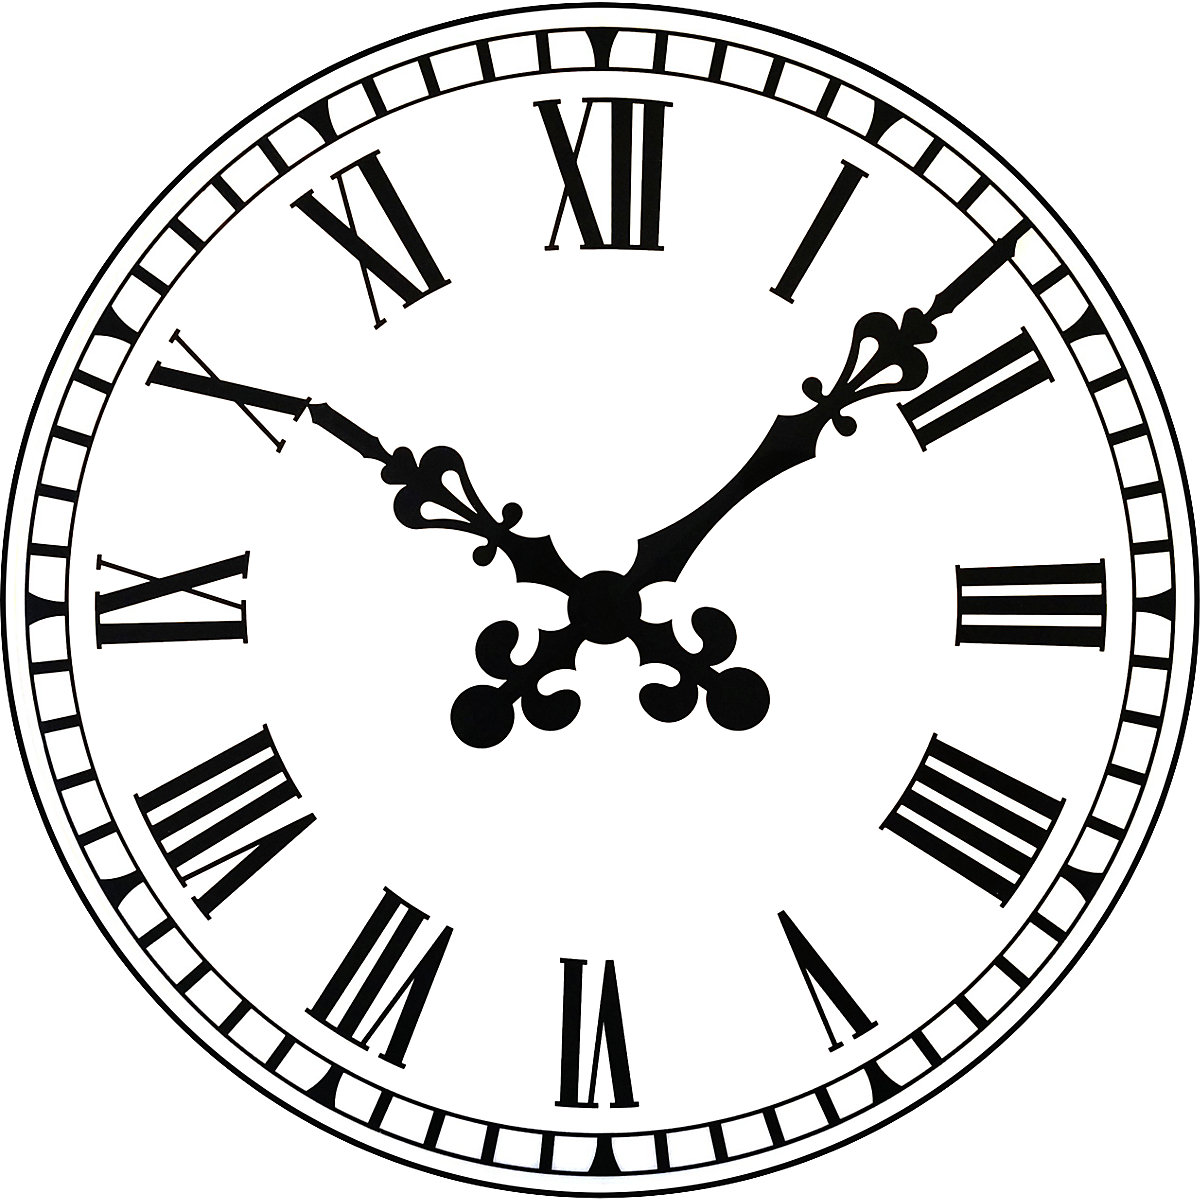 Clock face Royalty Free Vector Image - VectorStock